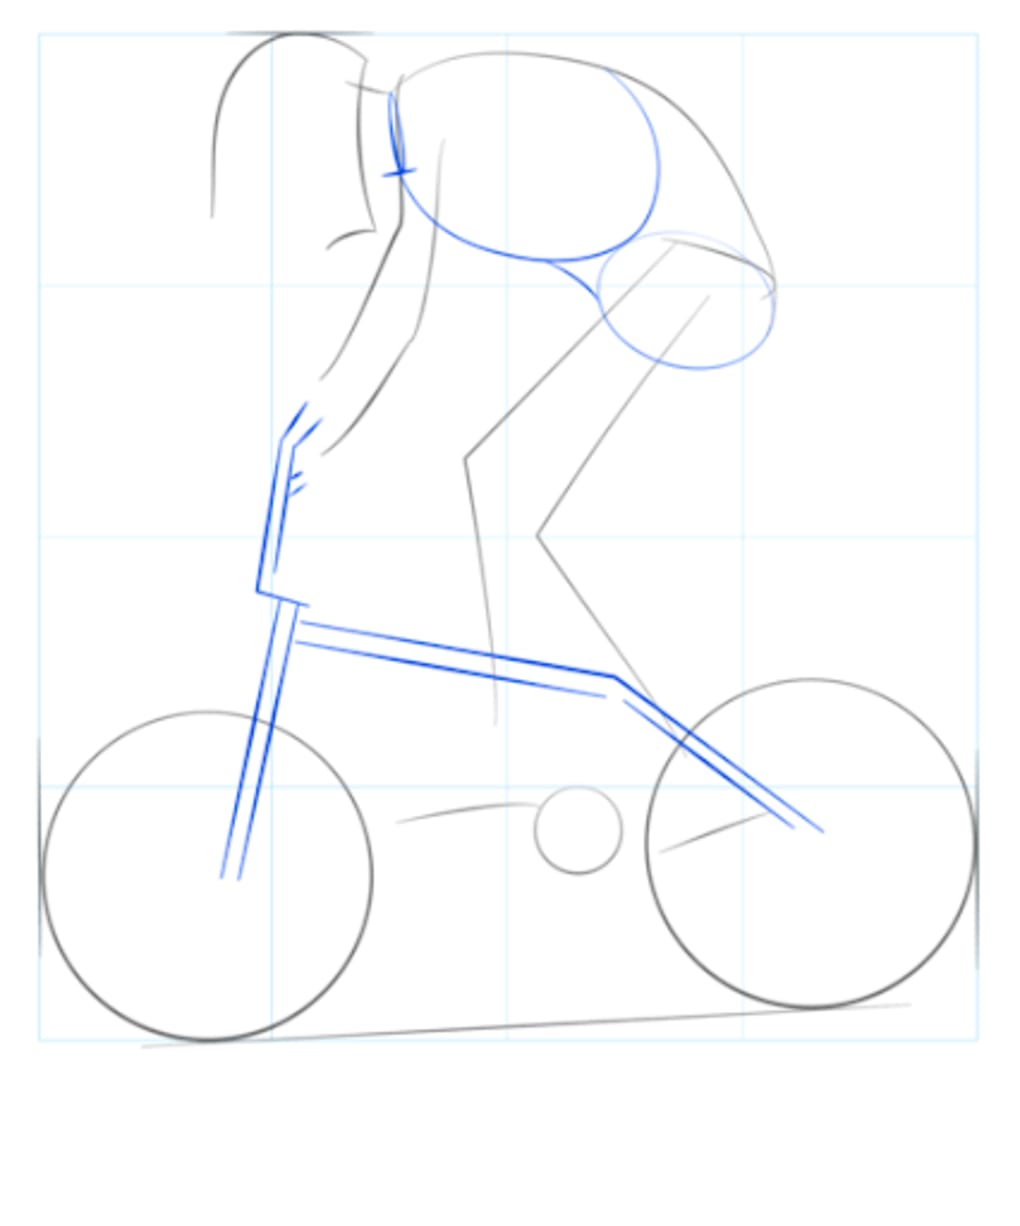 Рисуем человека на велосипеде